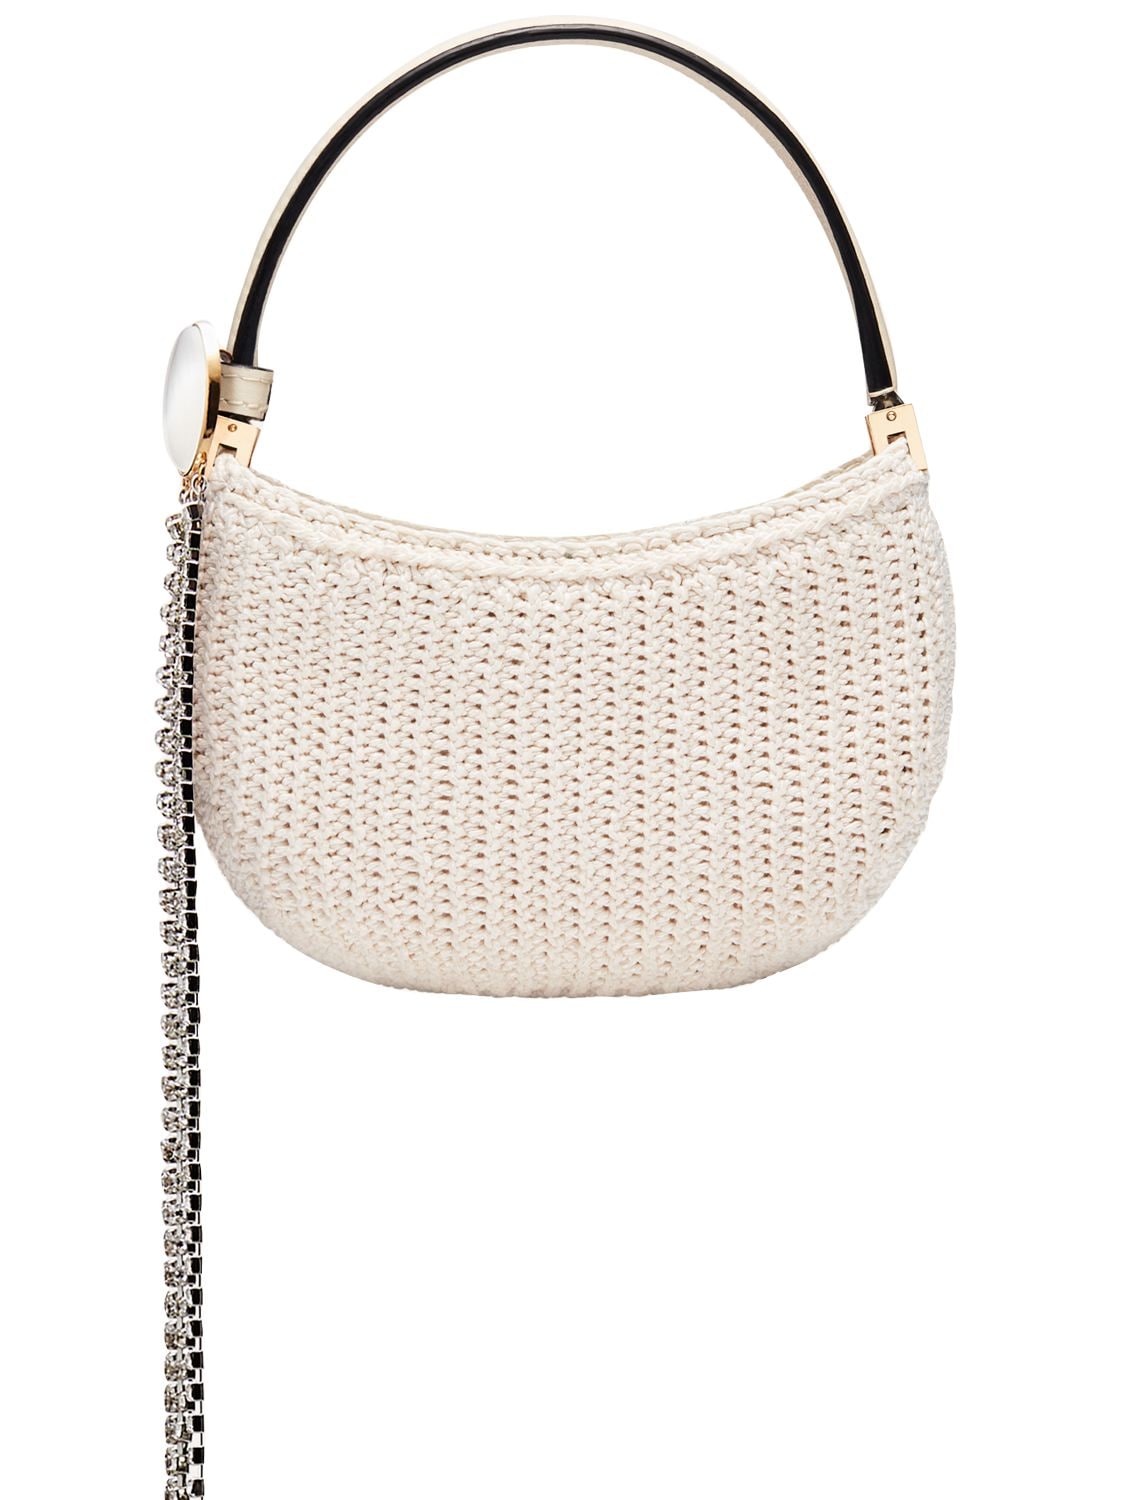 Magda Butrym Micro Vesna Crochet Top Handle Bag In Cream